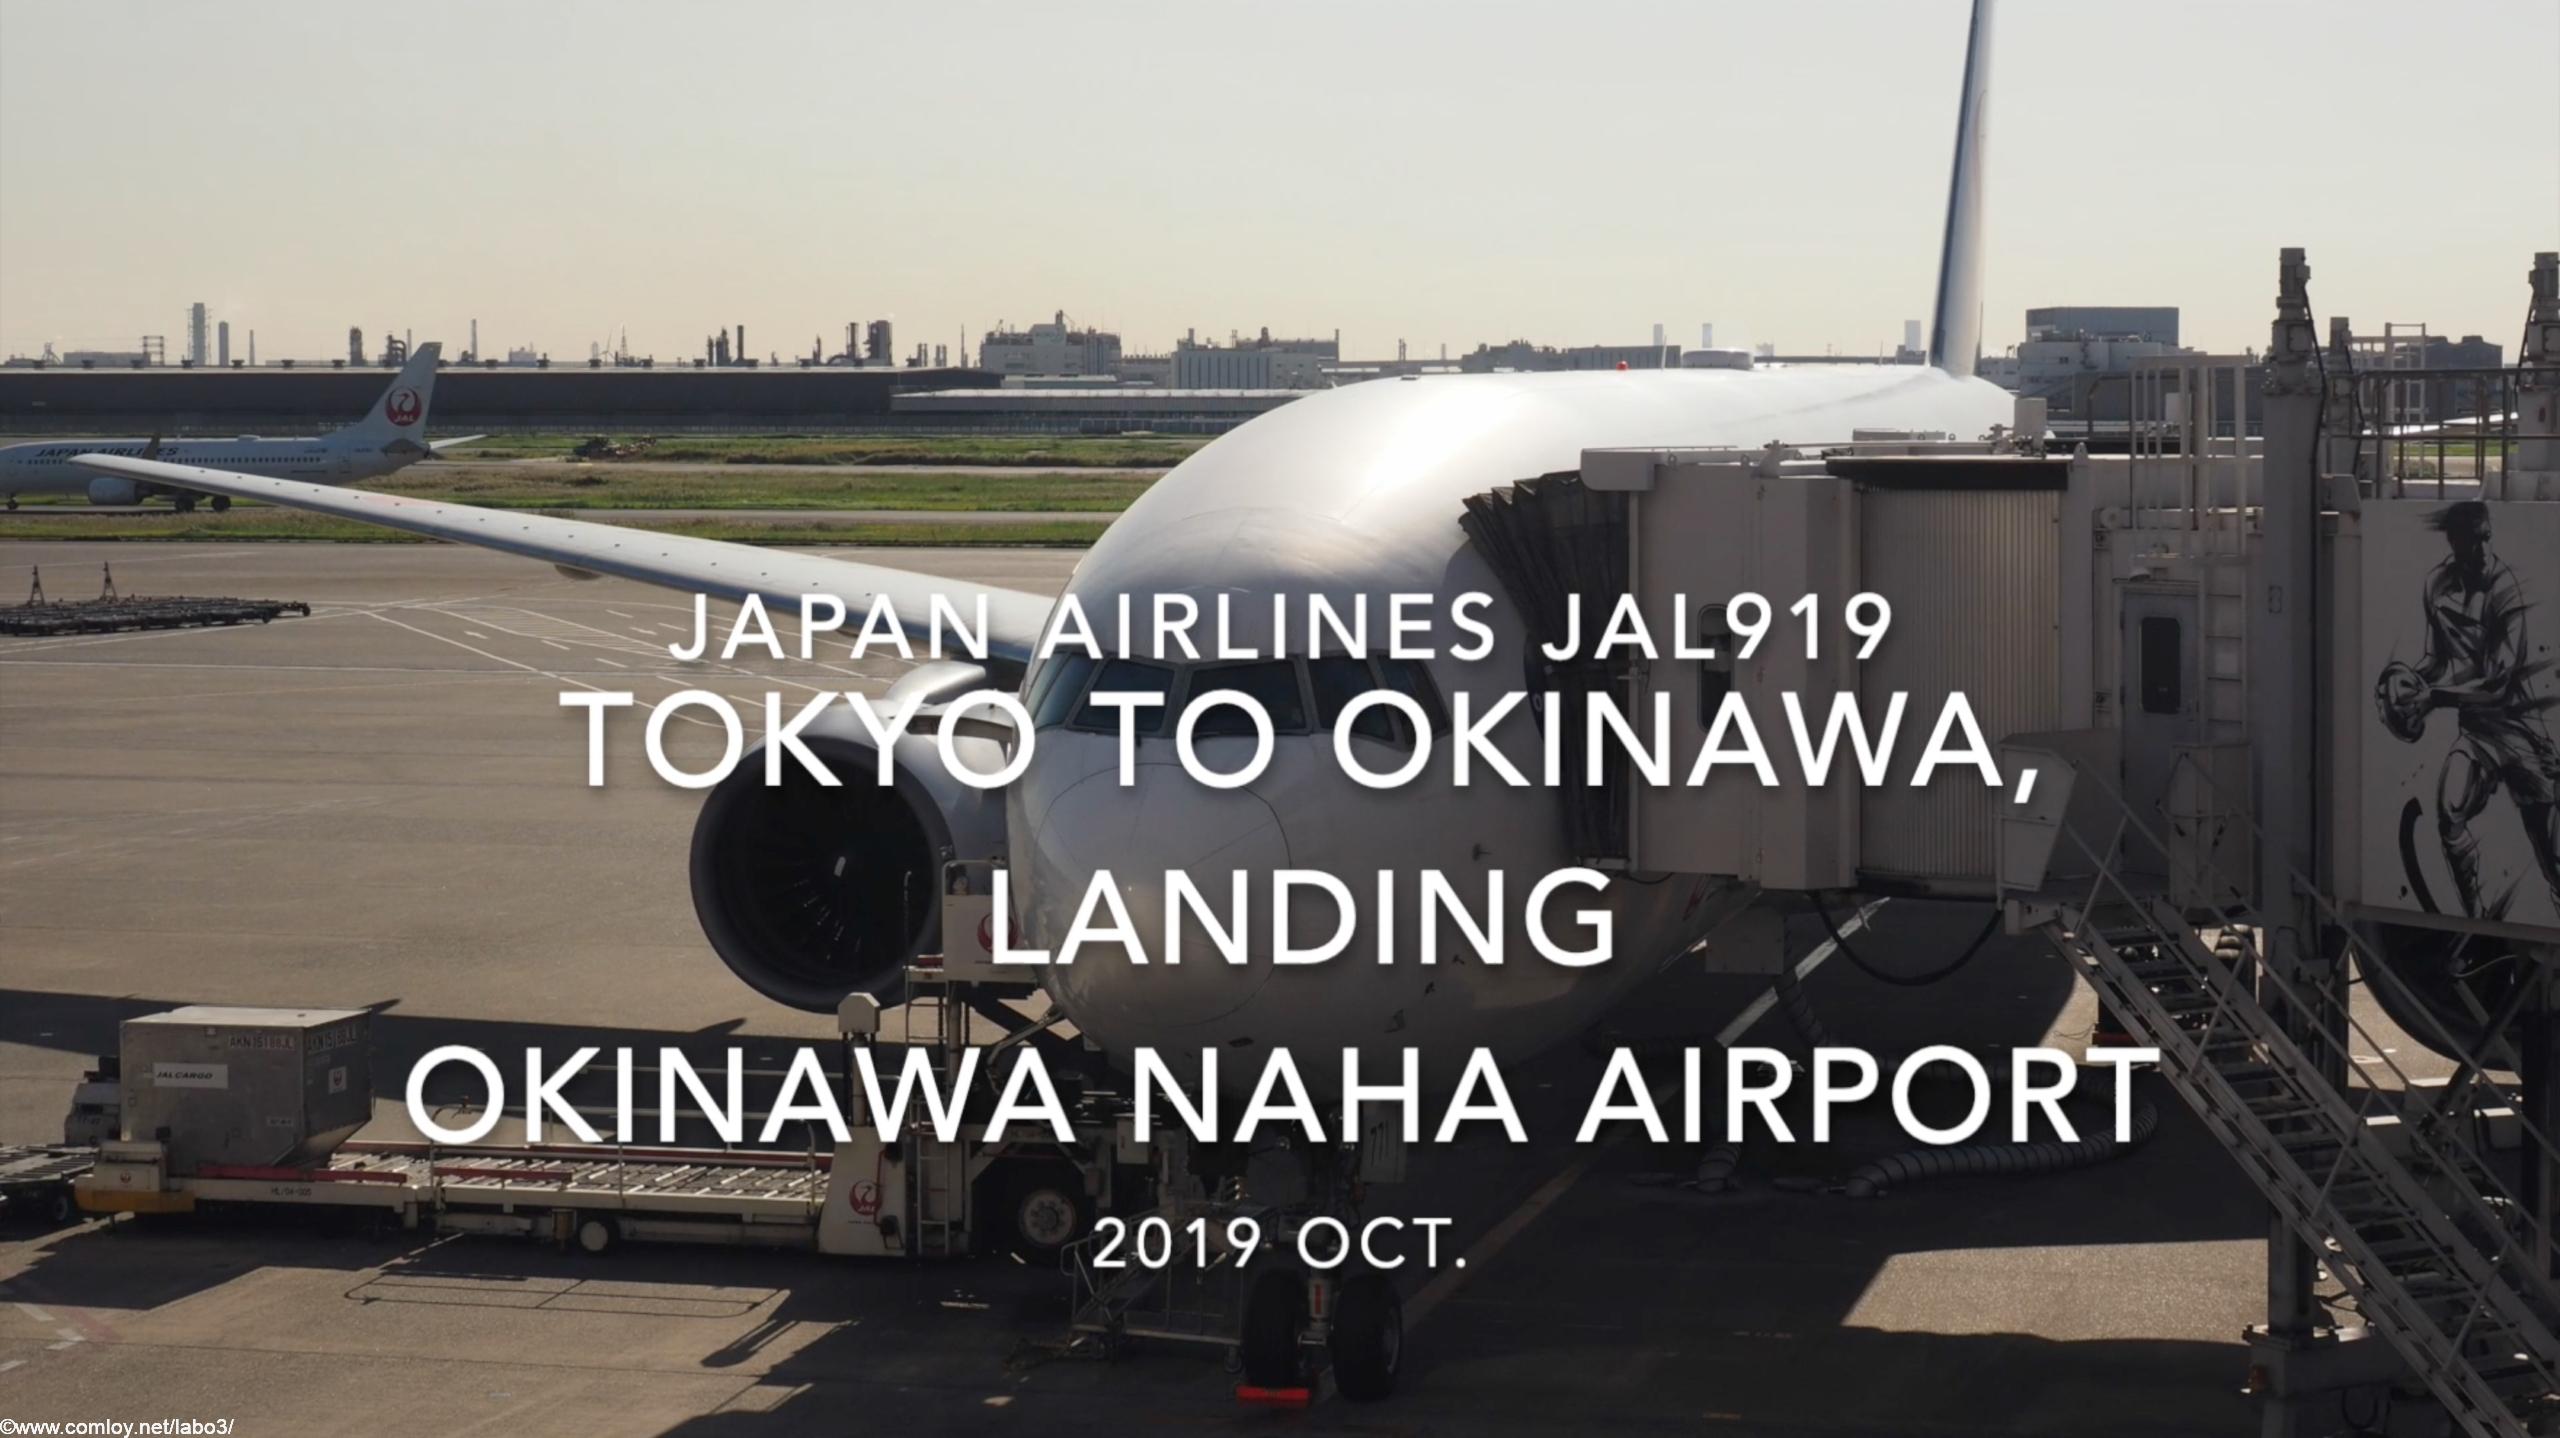 【機内から離着陸映像】2019 Oct Japan airlines JAL919 TOKYO HANEDA to OKINAWA NAHA, Landing OKINAWA NAHA Airport